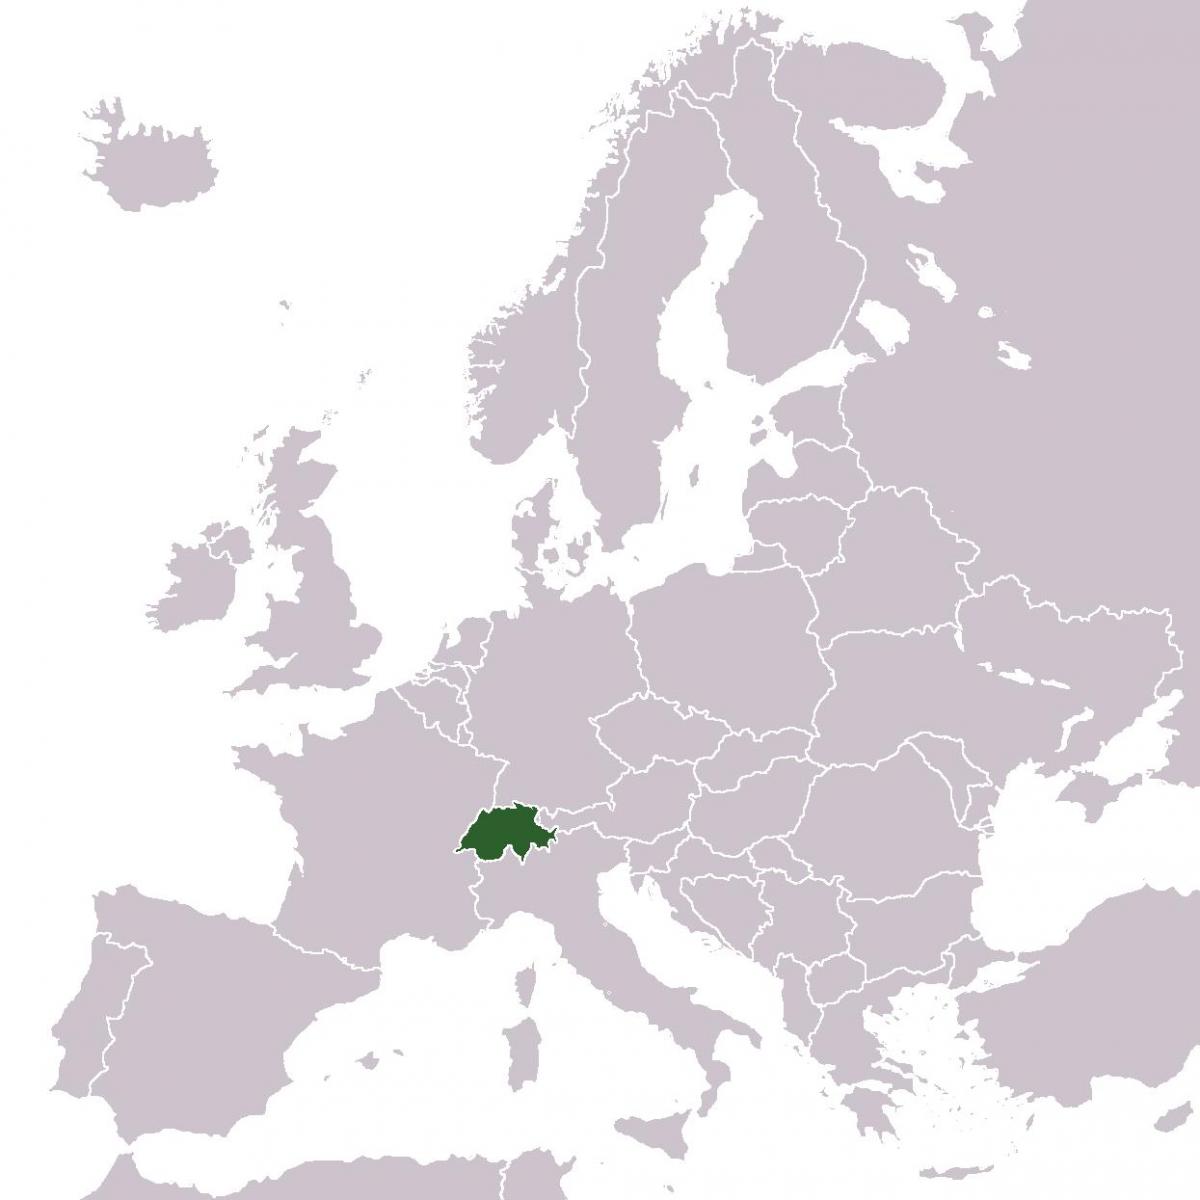 Շվեյցարիա դիրքը քարտեզի վրա Եվրոպայի